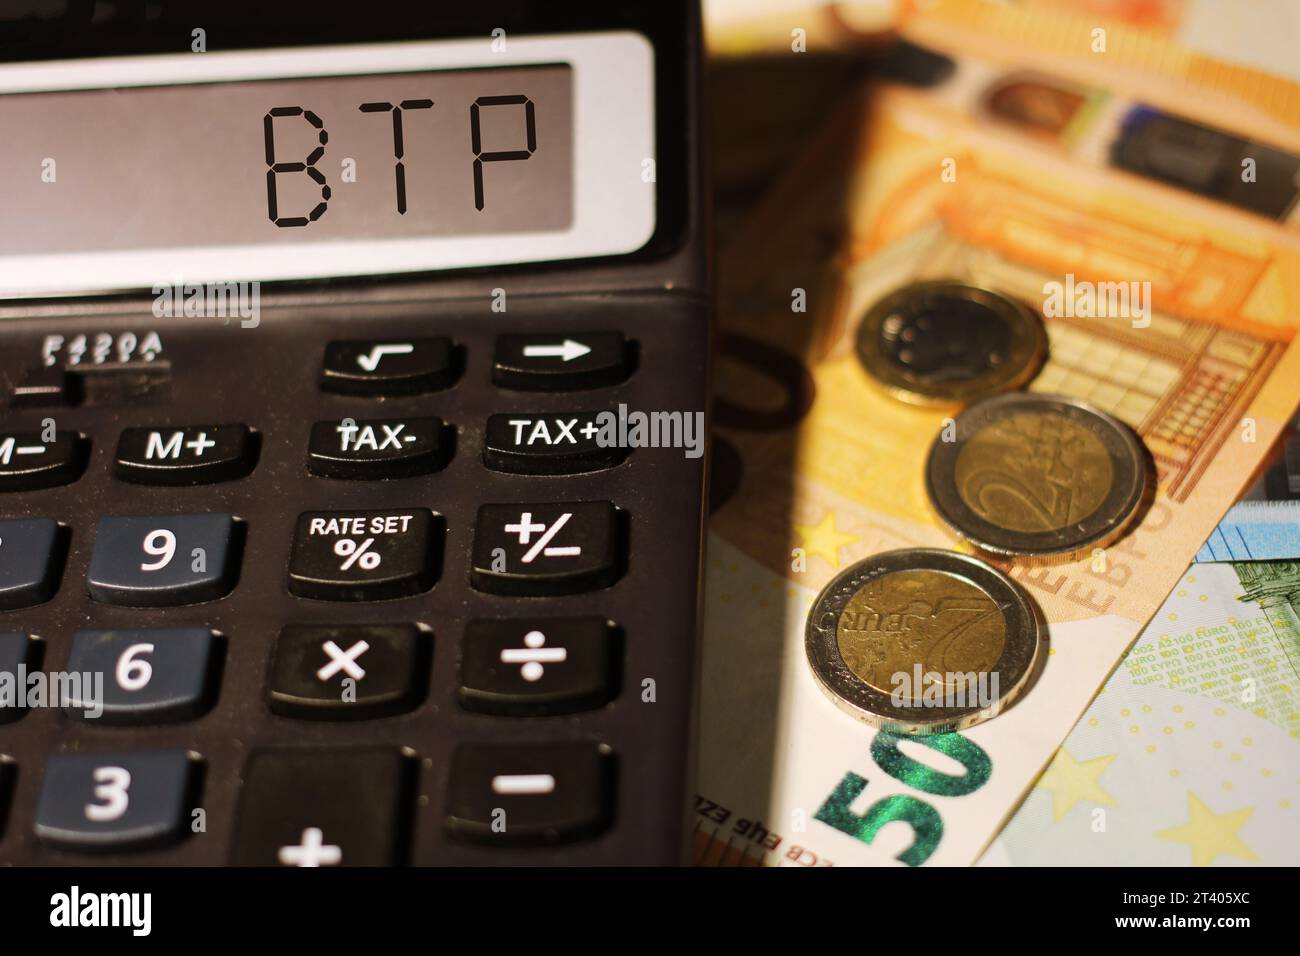 Calculatrice avec le texte « BTP » traduit par obligations d’État italiennes. Banque D'Images